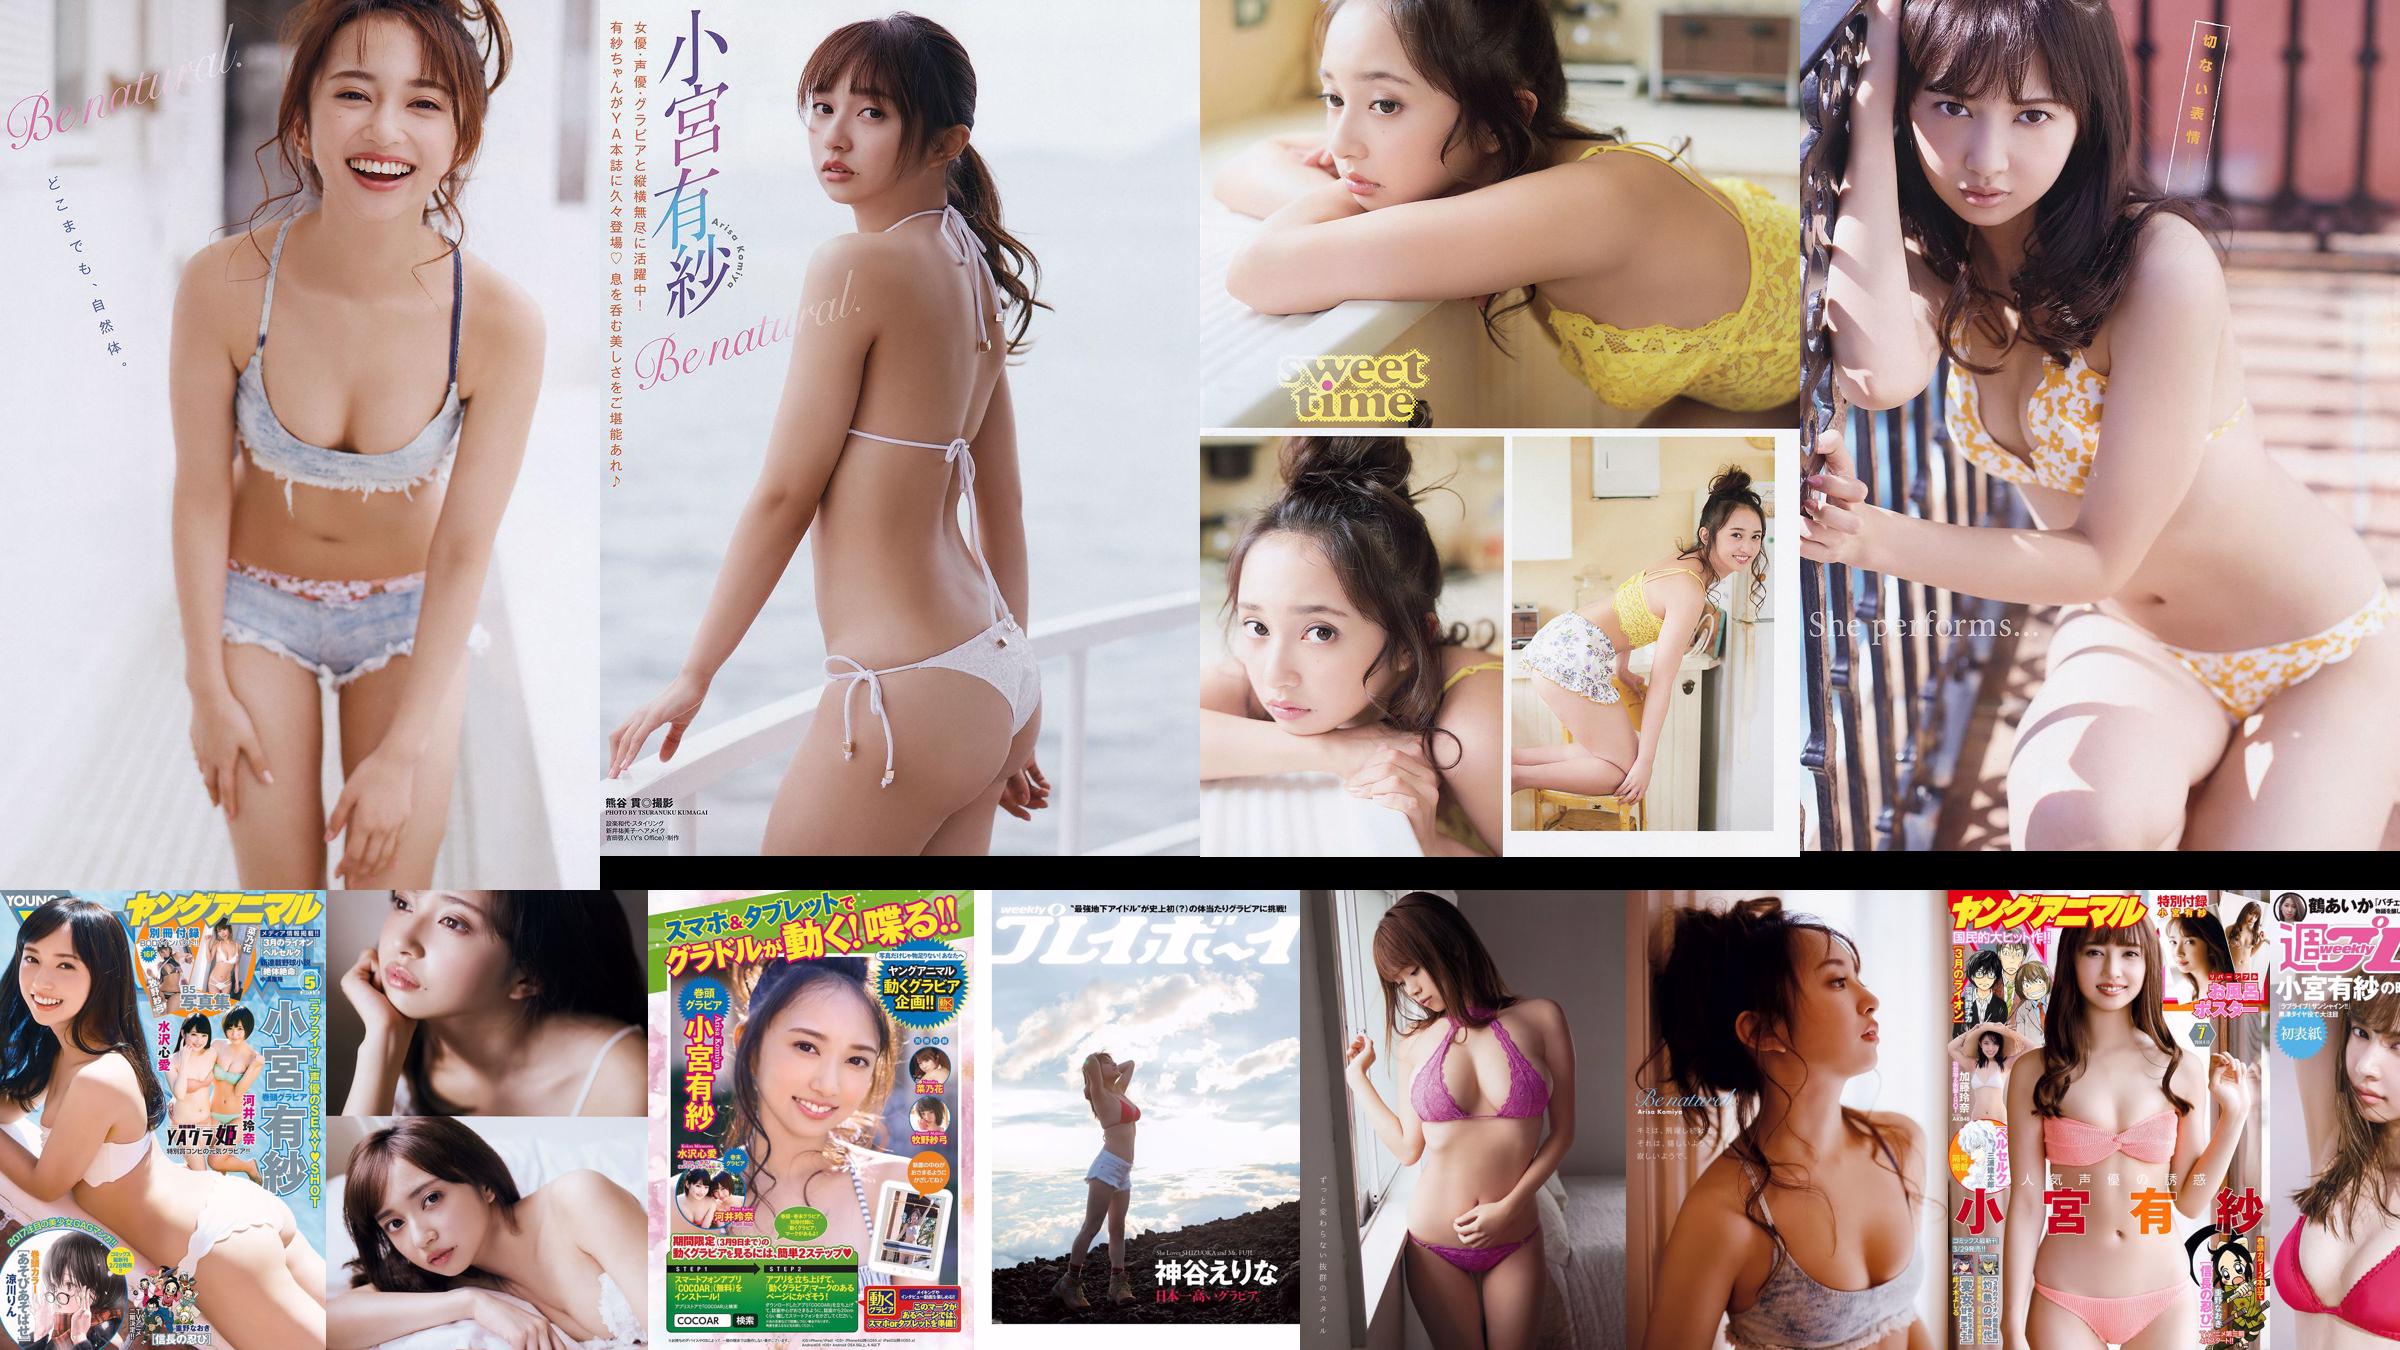 Arisa Komiya Aika Tsuru Sayaka Isoyama Kasumi Arimura Rina Otomo Sei Shiraishi Erina Kamiya [Weekly Playboy] 2017 No.41 Photograph No.109495 Page 1